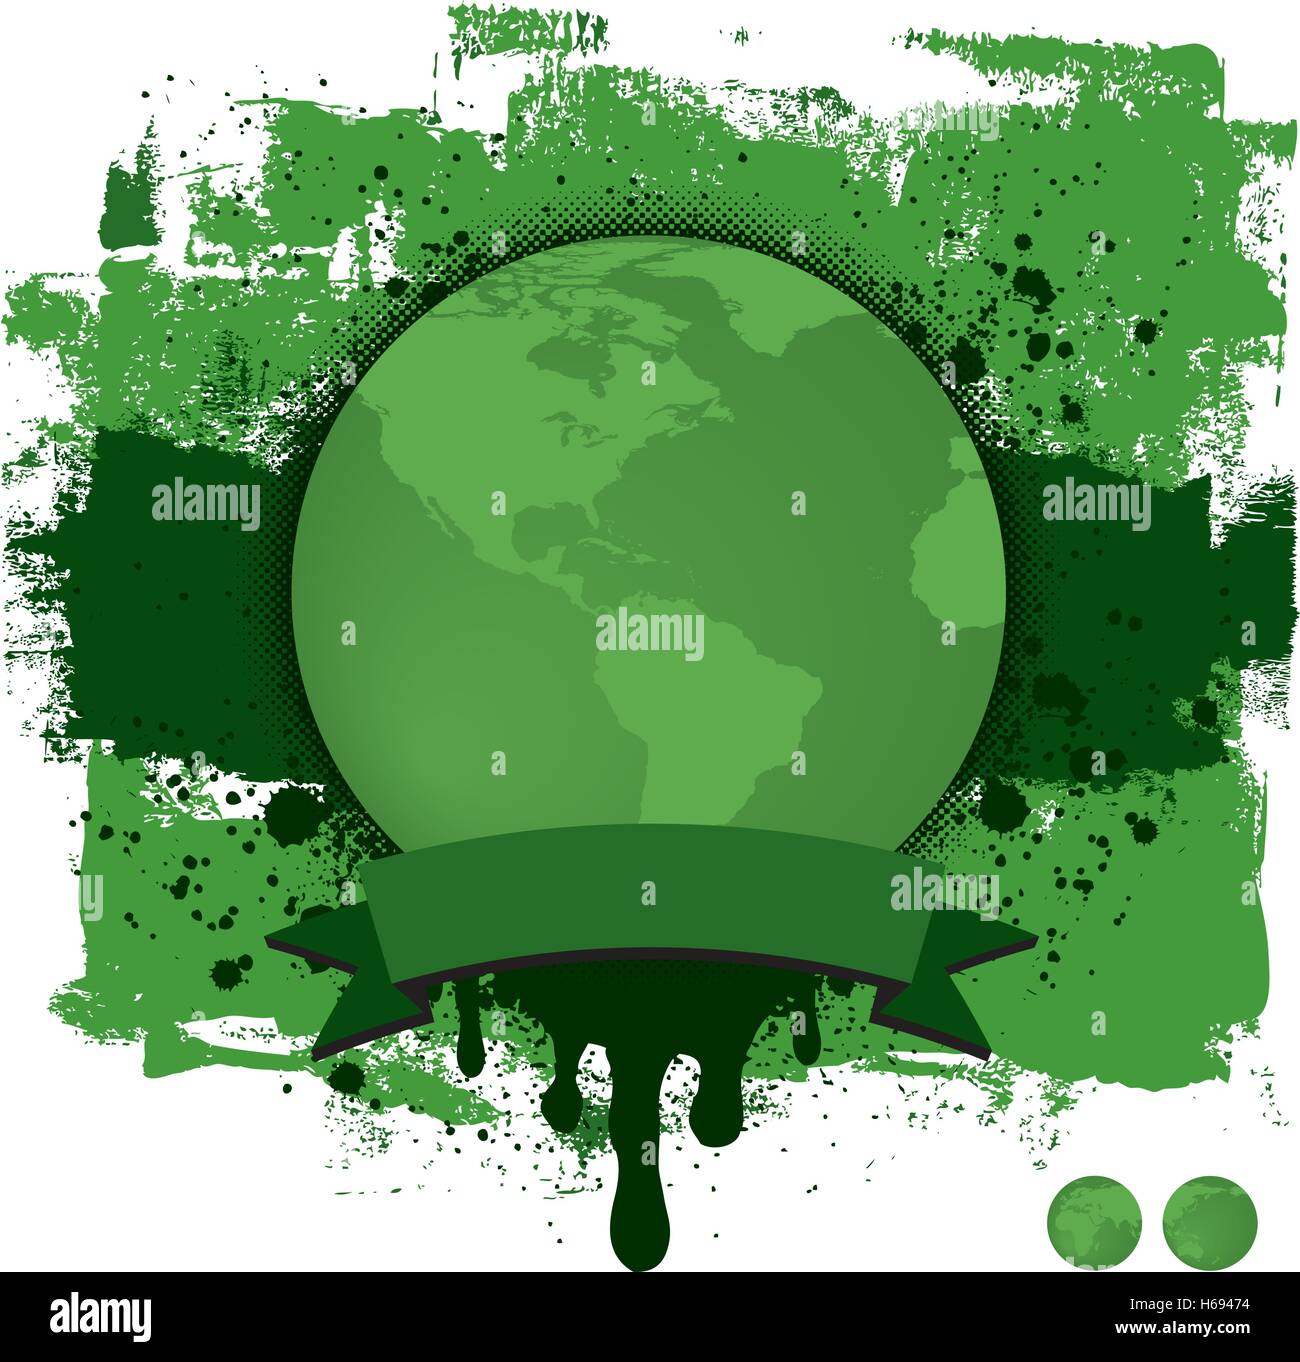 La texture de la terre un globe terrestre globe terre verte avec un ruban pour le texte de bannière sur une grunge background. Illustration de Vecteur